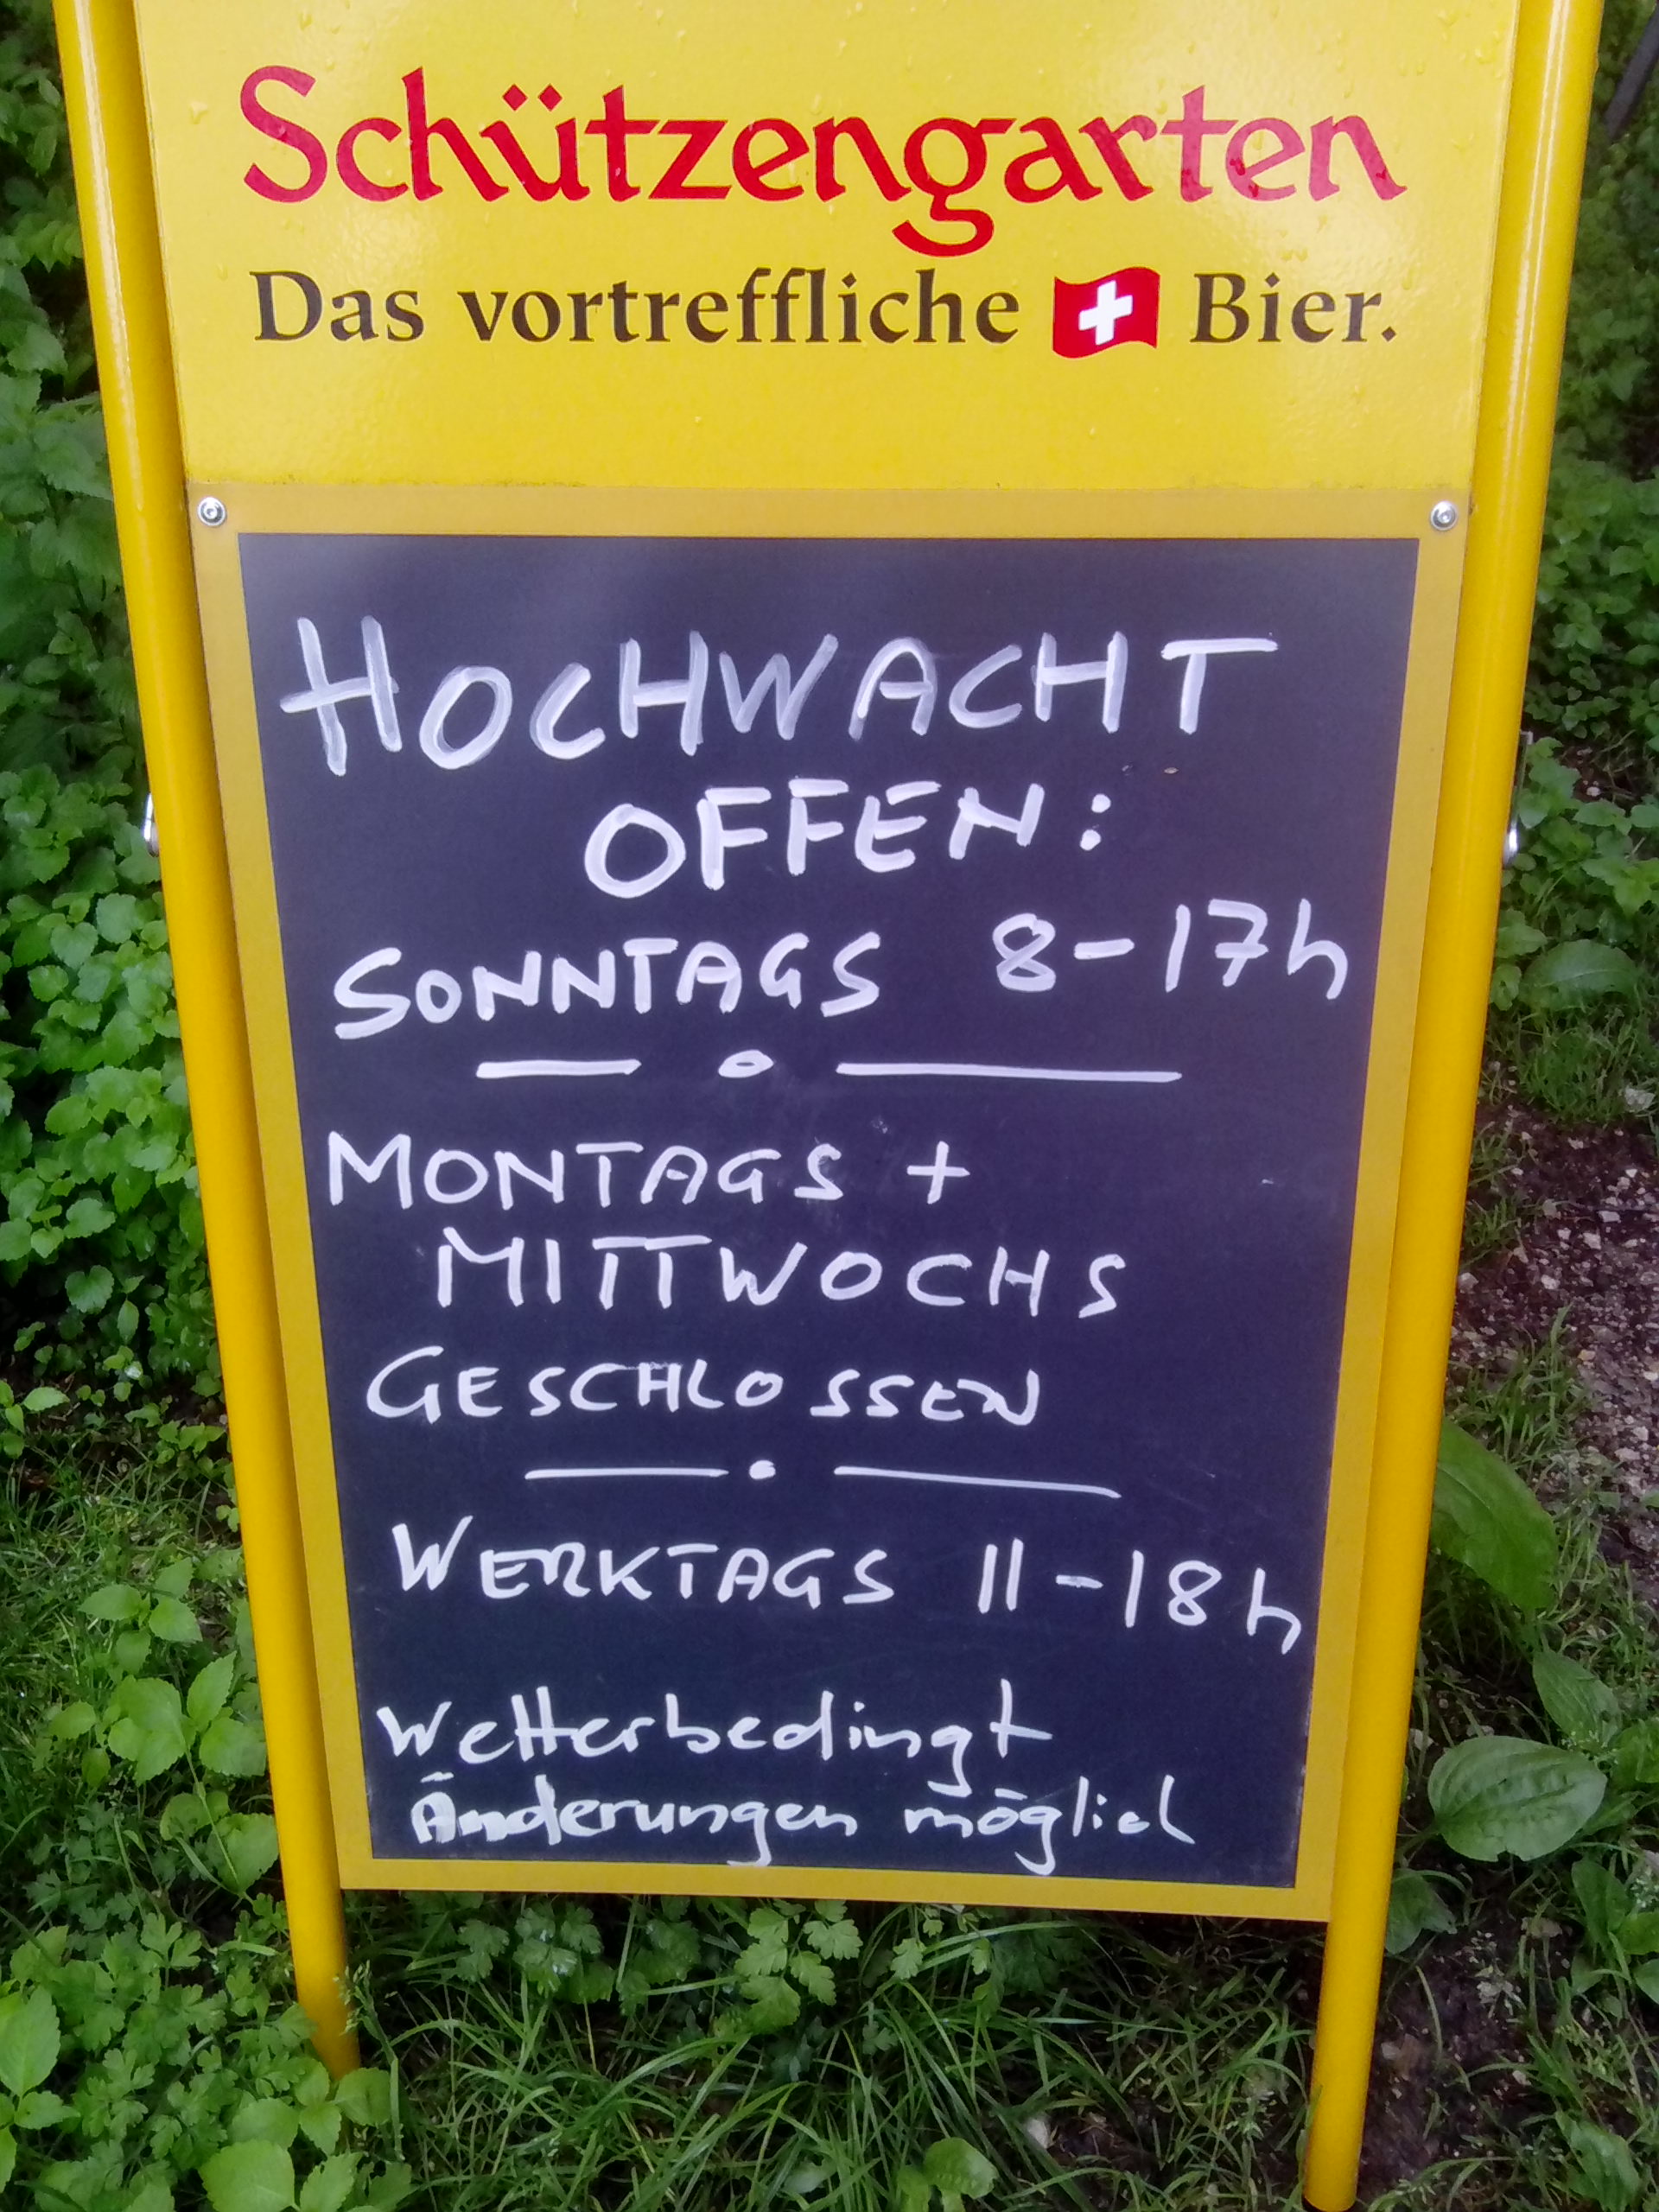 Leider hatte das Restaurant Hochwacht auf der Lägere heute Mittwoch 20.05.2015 geschlossen